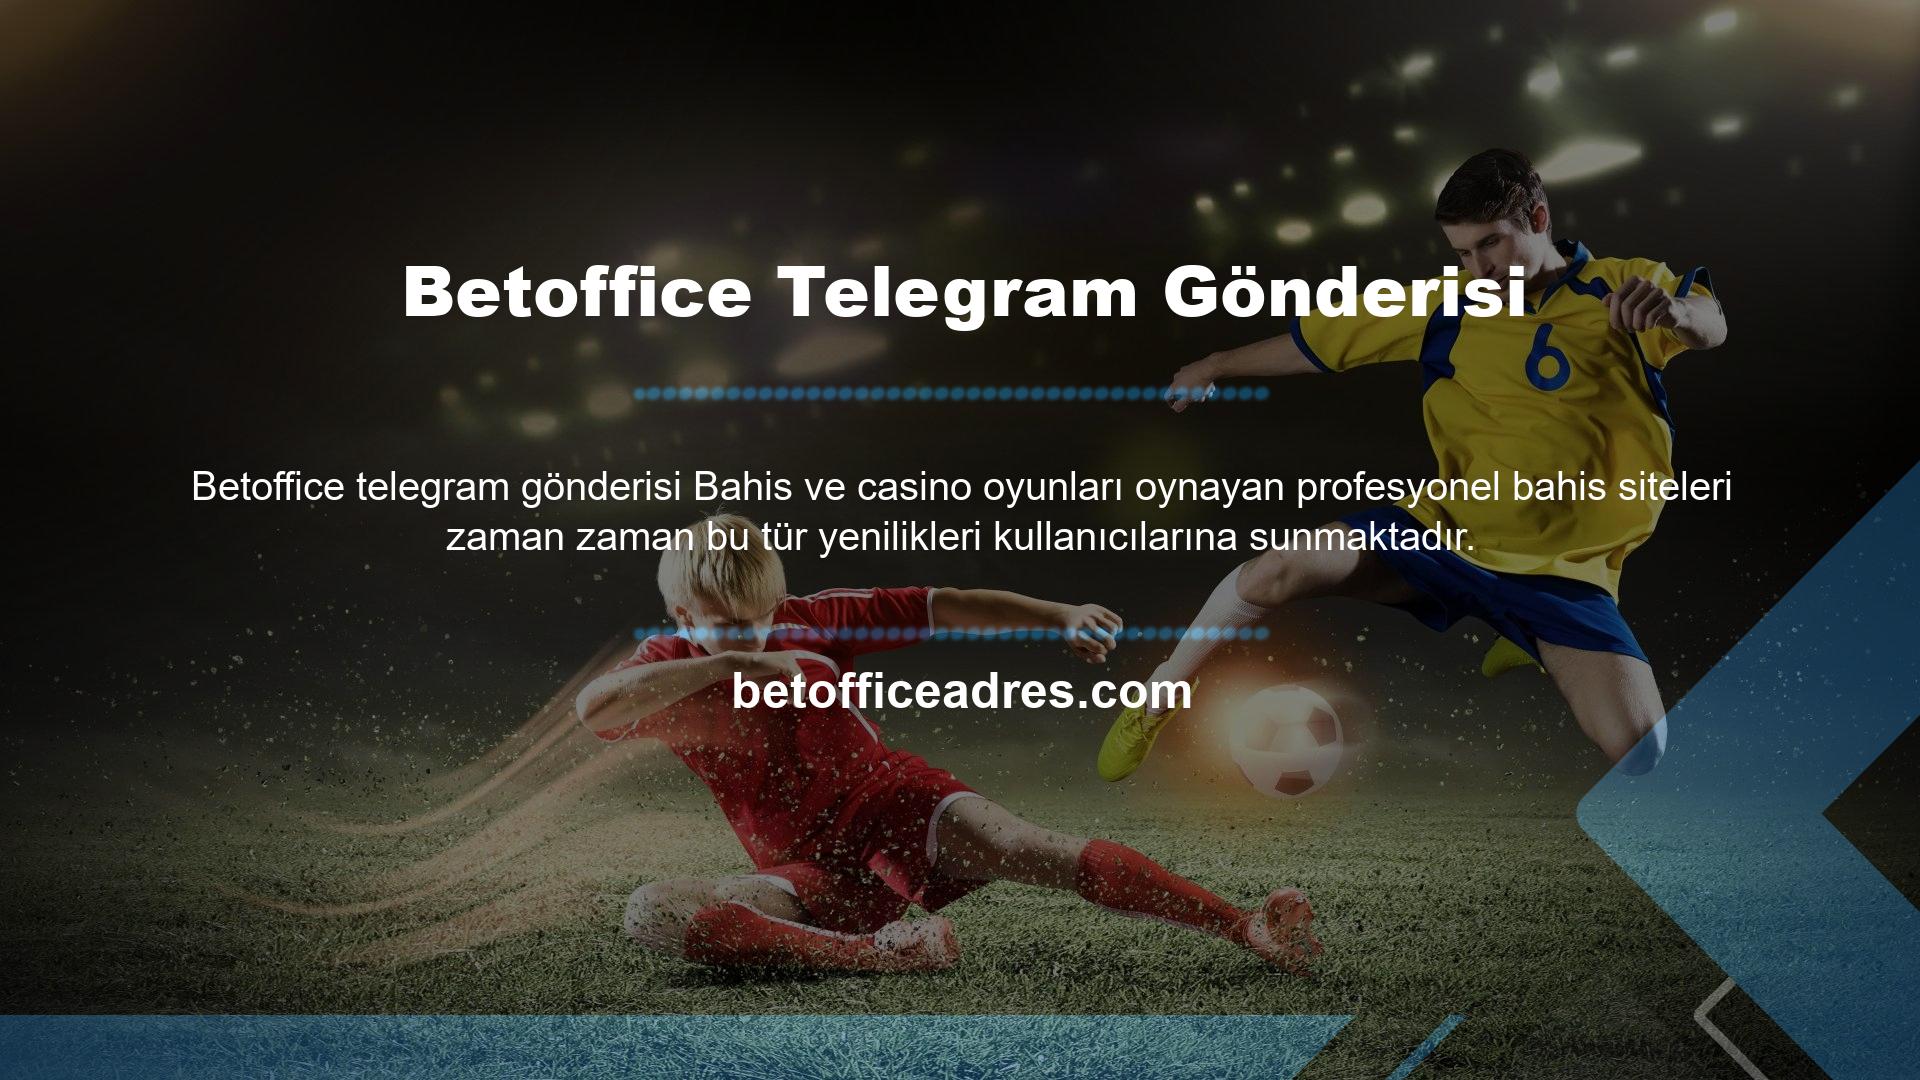 Site sadece spor bahisleri değil aynı zamanda Betoffice telegram gönderisi  oyun seçenekleri de sunmaktadır